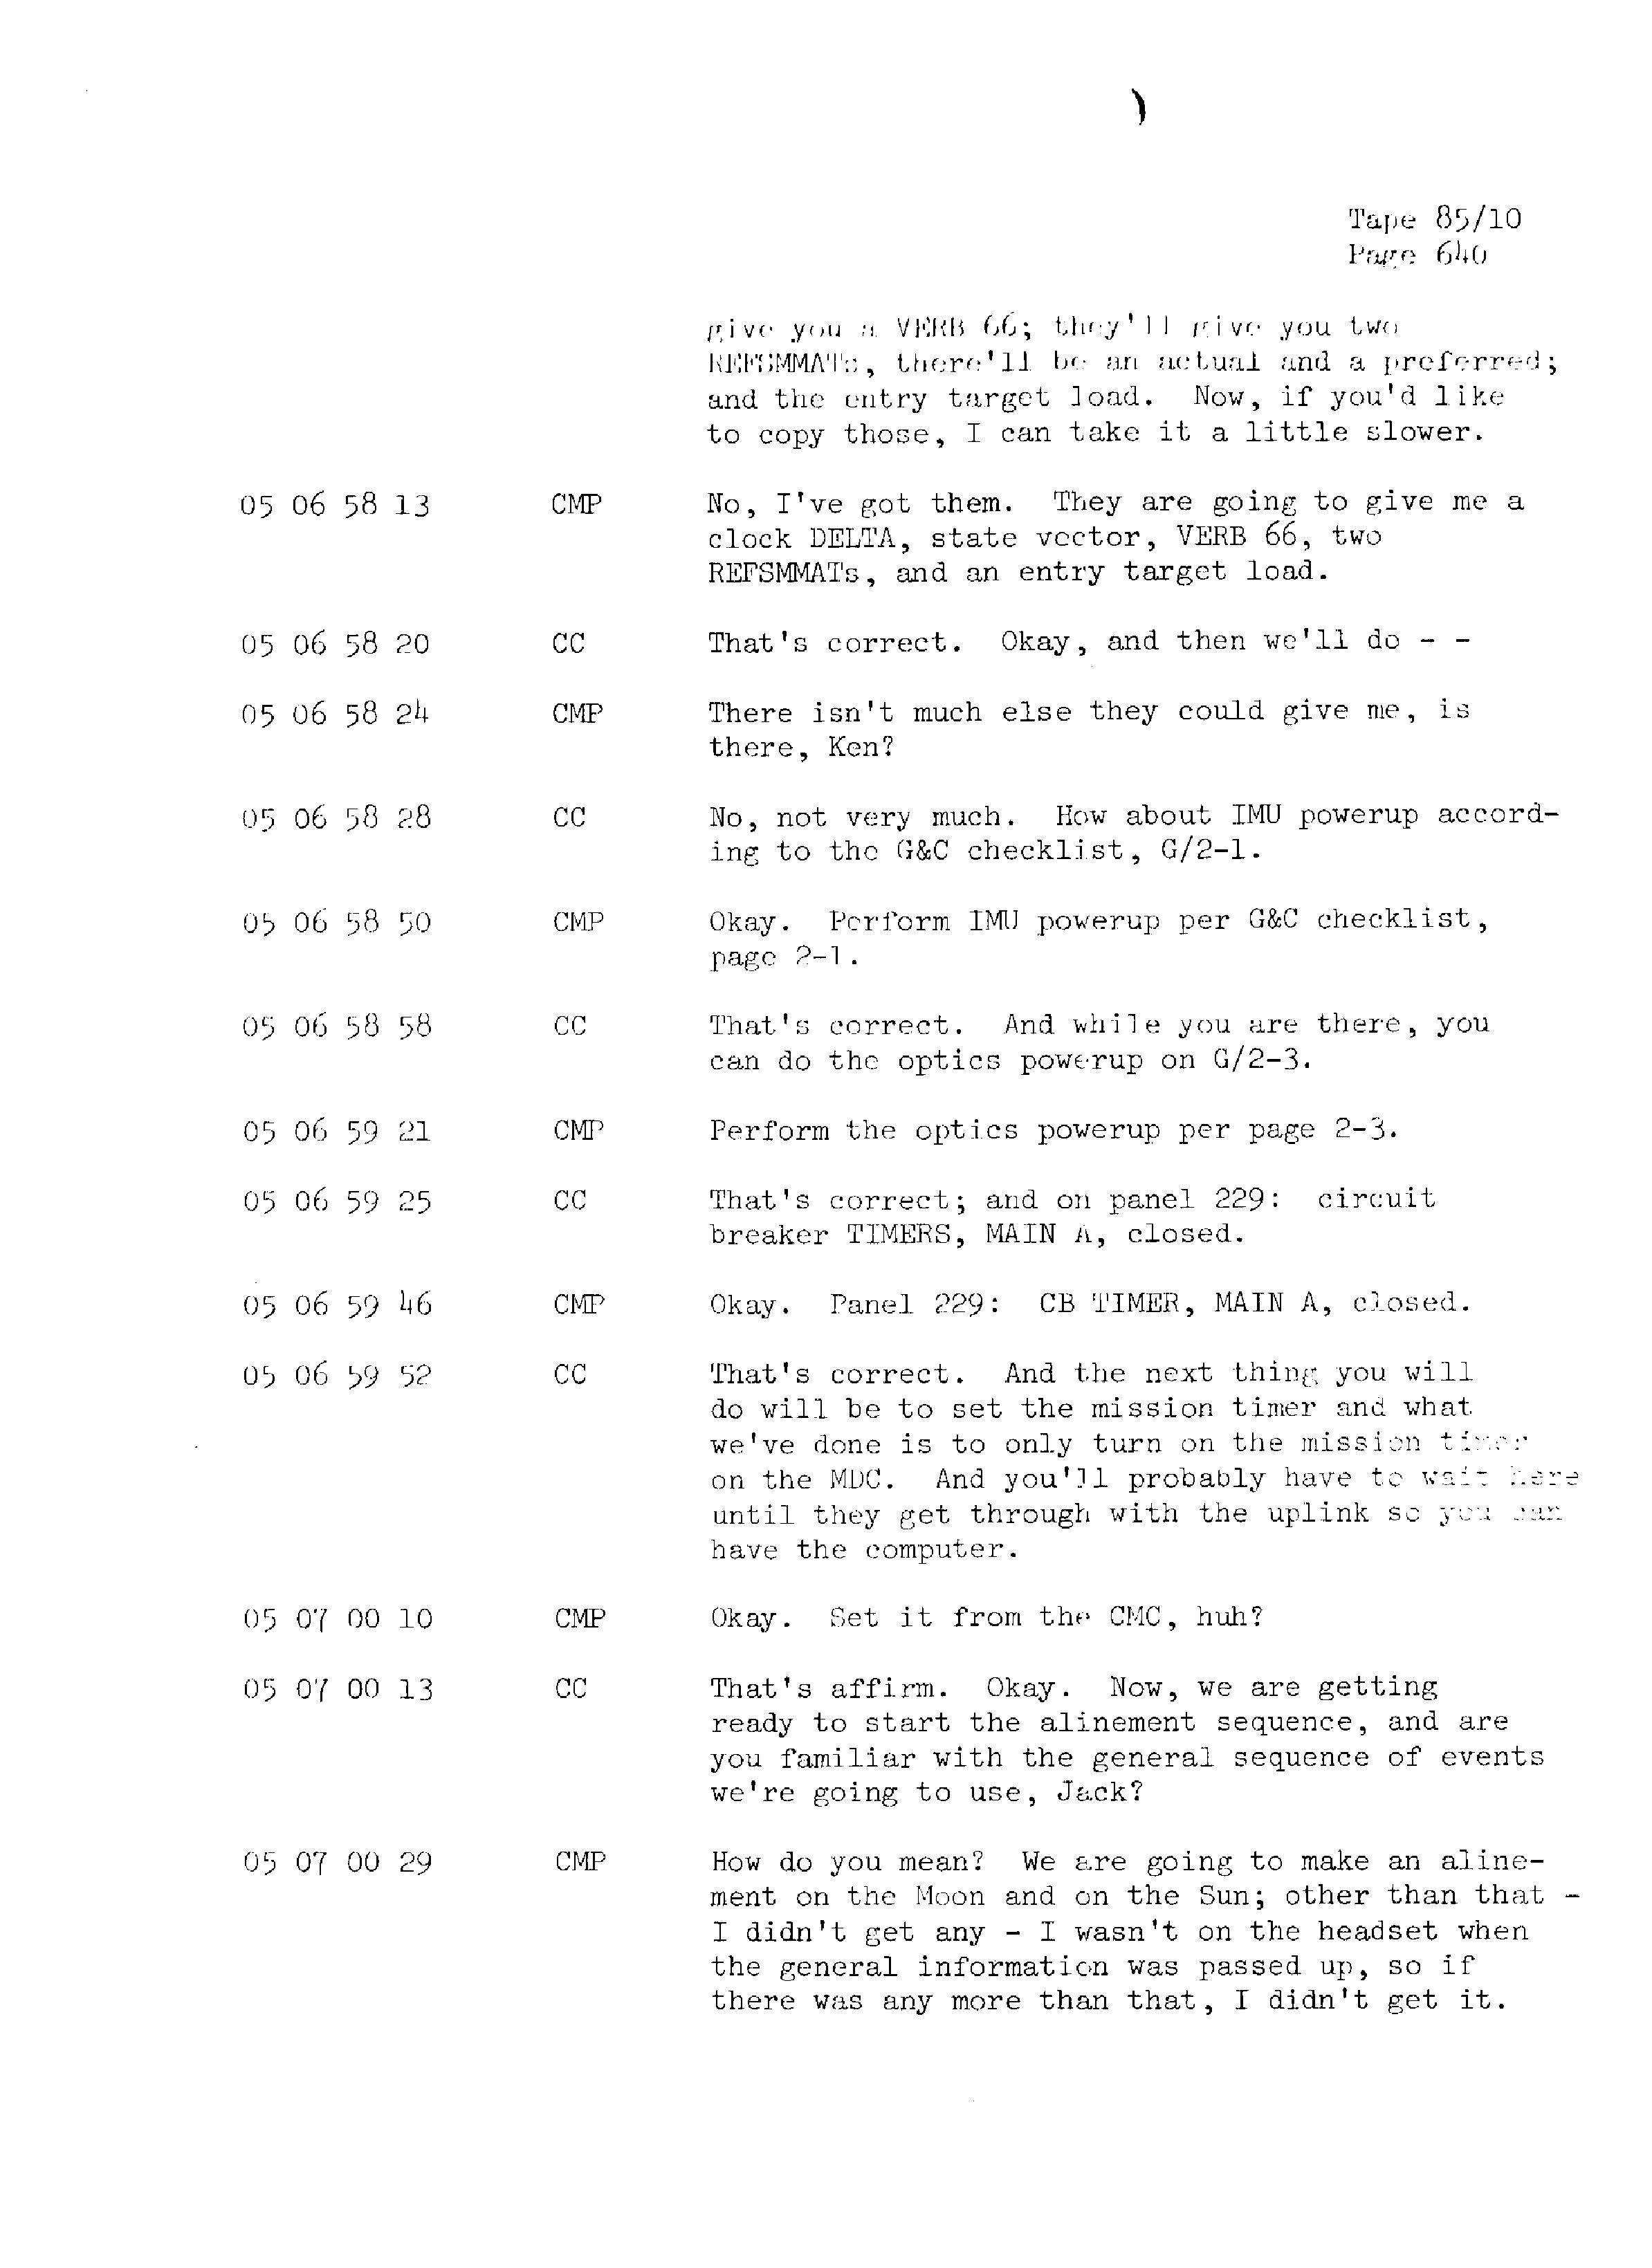 Page 647 of Apollo 13’s original transcript